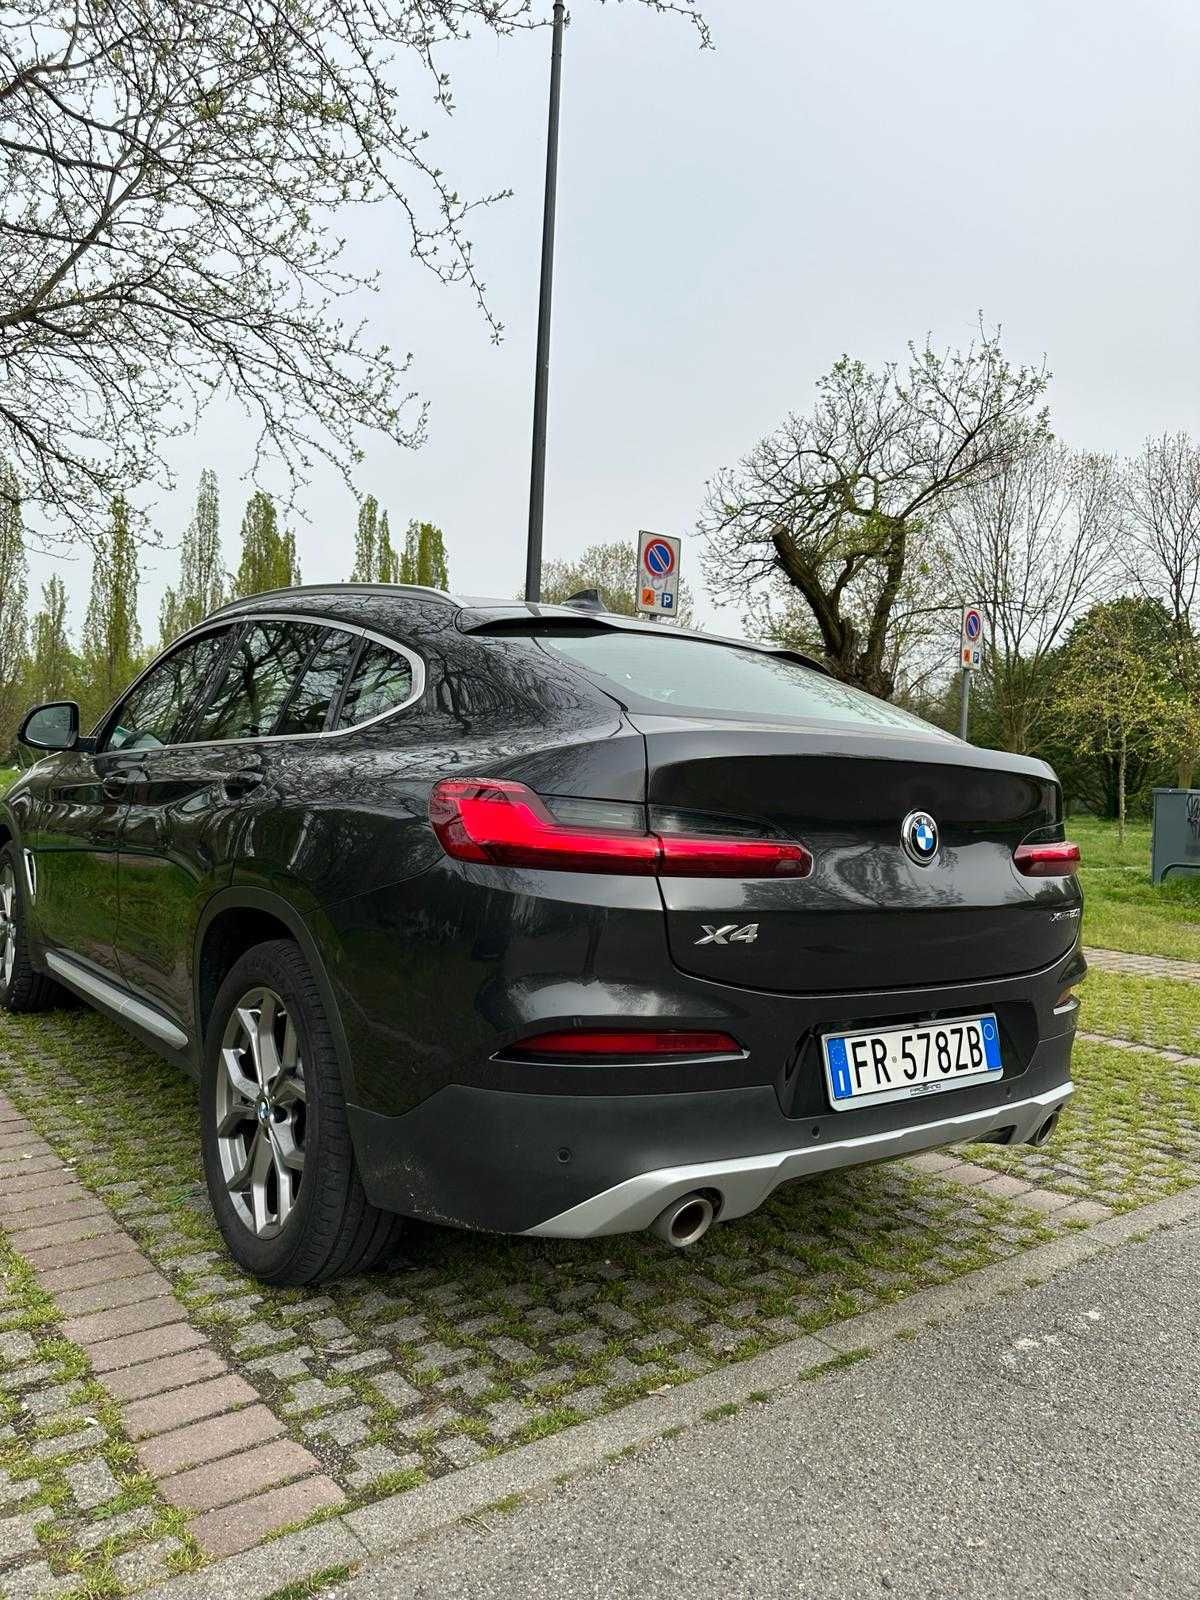 BMW X4 XDrive 20i, 2018 benzina, 40600km